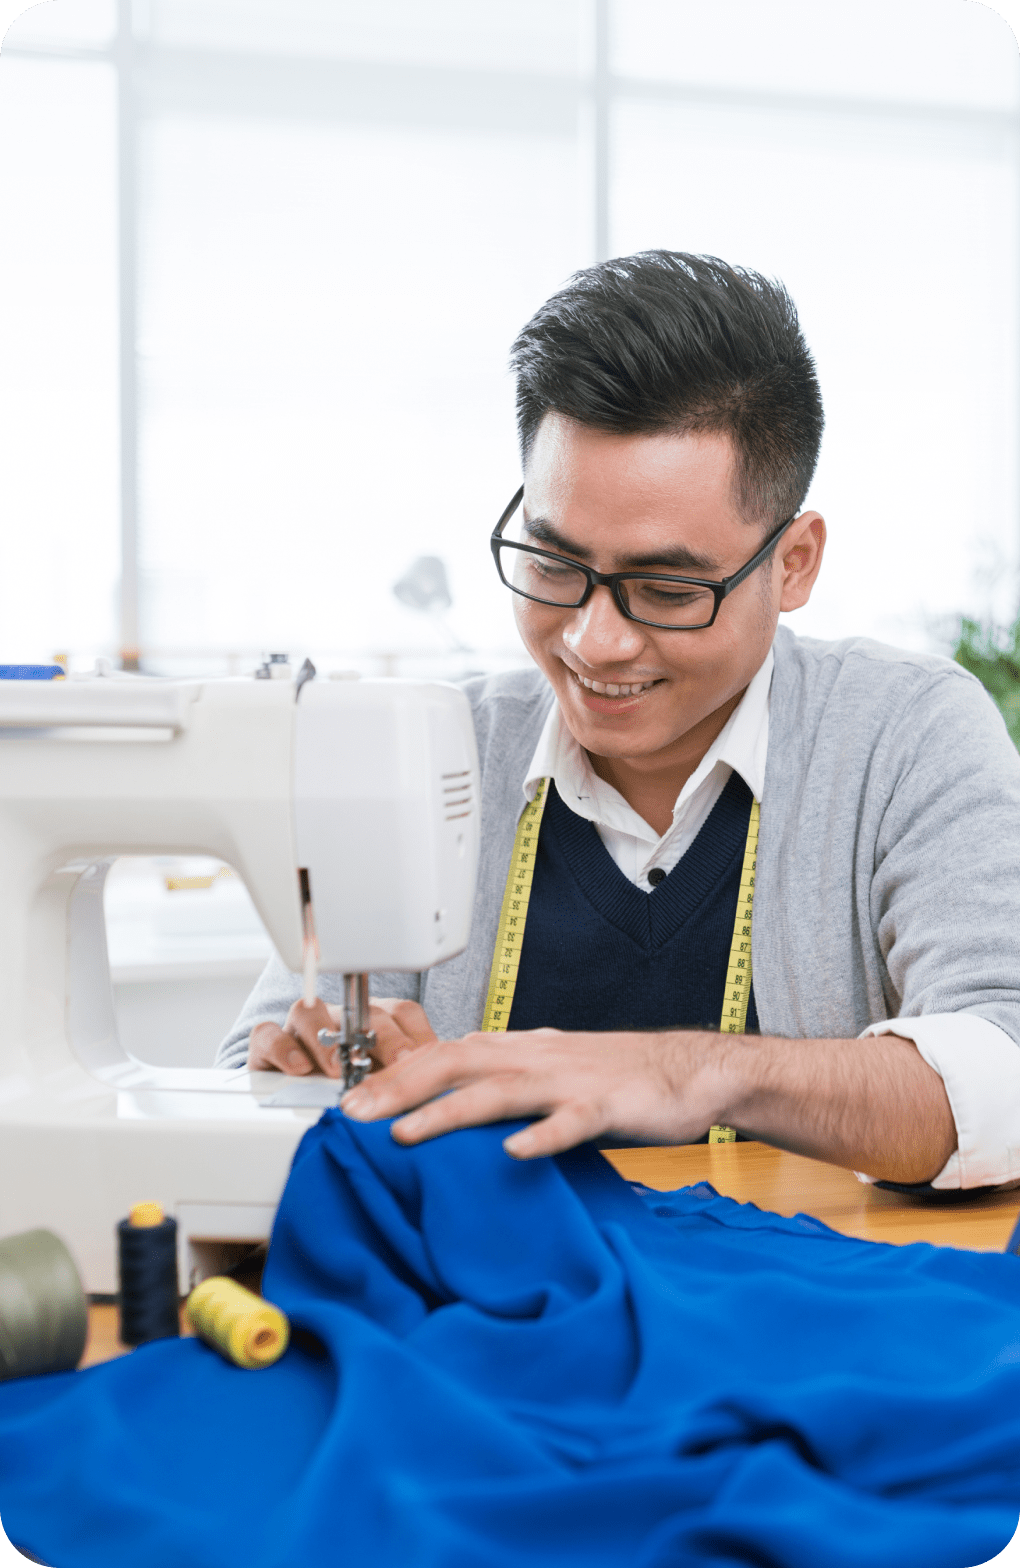 Hombre que sonríe mientras usa una máquina de coser.